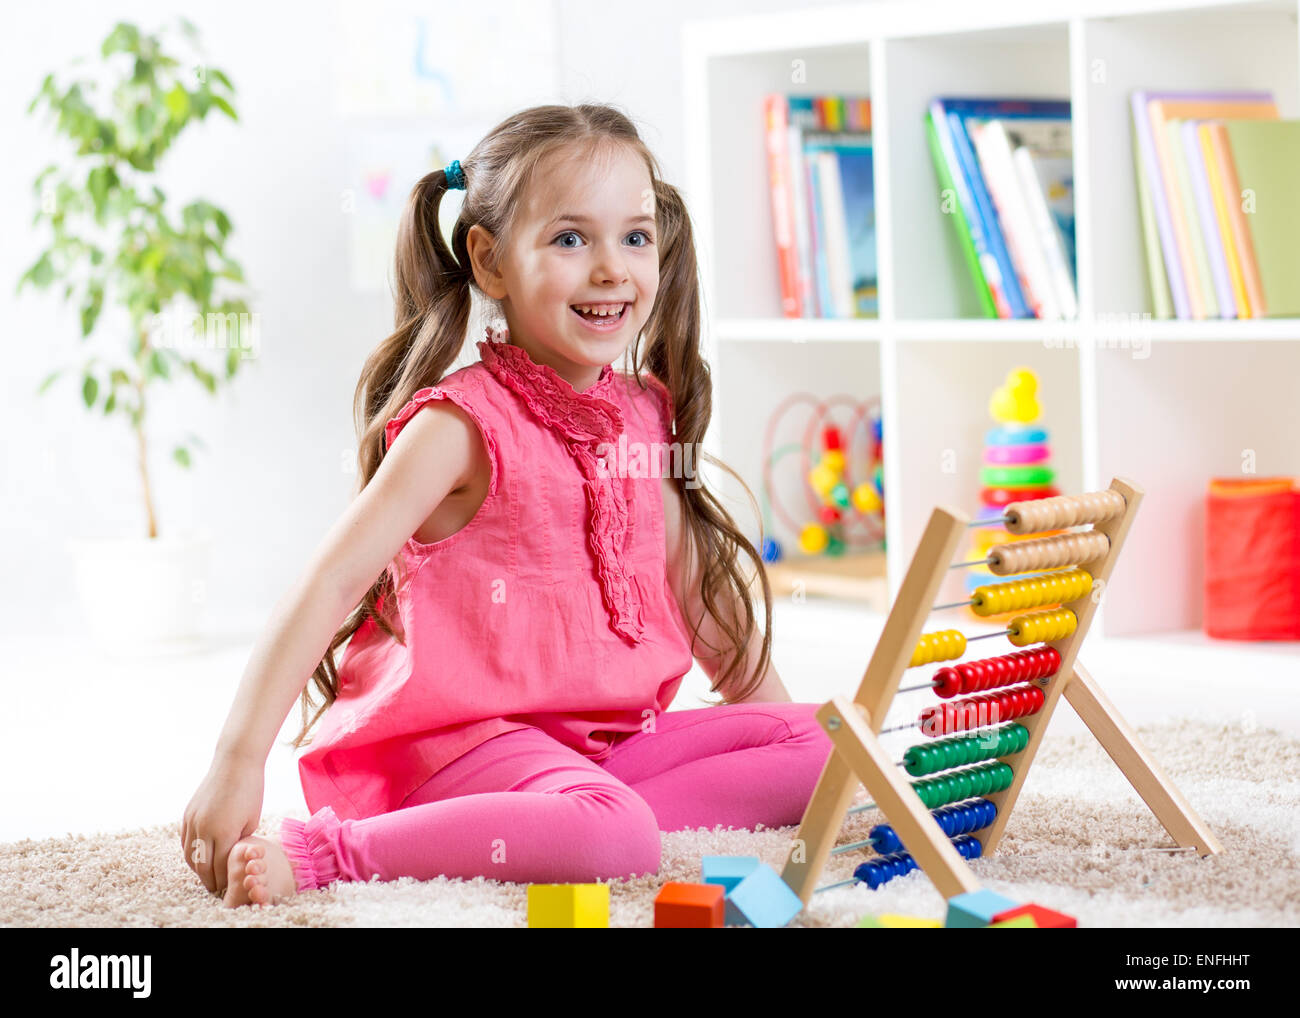 Capretto felice ragazza che gioca con abacus toy in ambienti interni Foto Stock